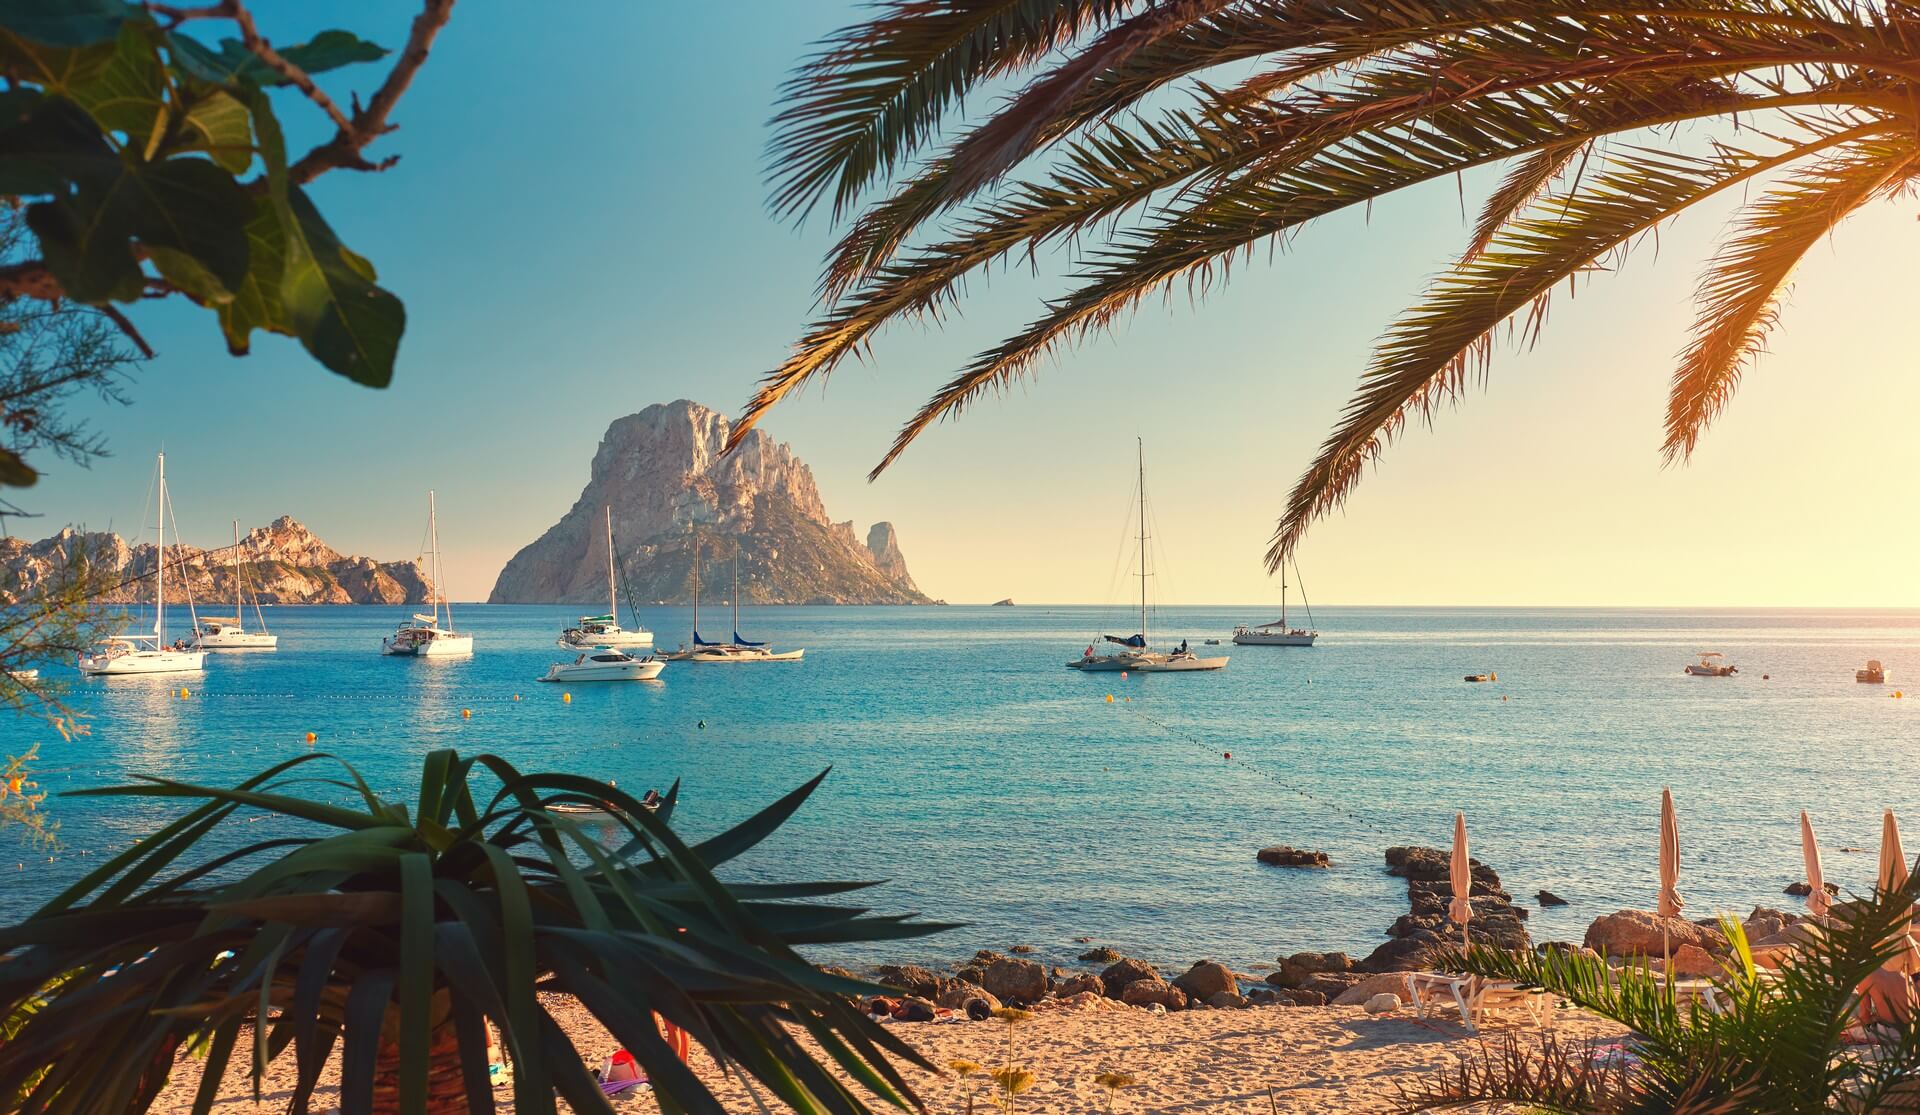 Famosa, vuota e bella spiaggia di Cala d'Hort, in estate molto popolare, costa sabbiosa hanno una fantastica vista della misteriosa isola di Es Vedra. Navi ormeggiate nella baia. Isola di Ibiza, Isole Baleari. Spagna